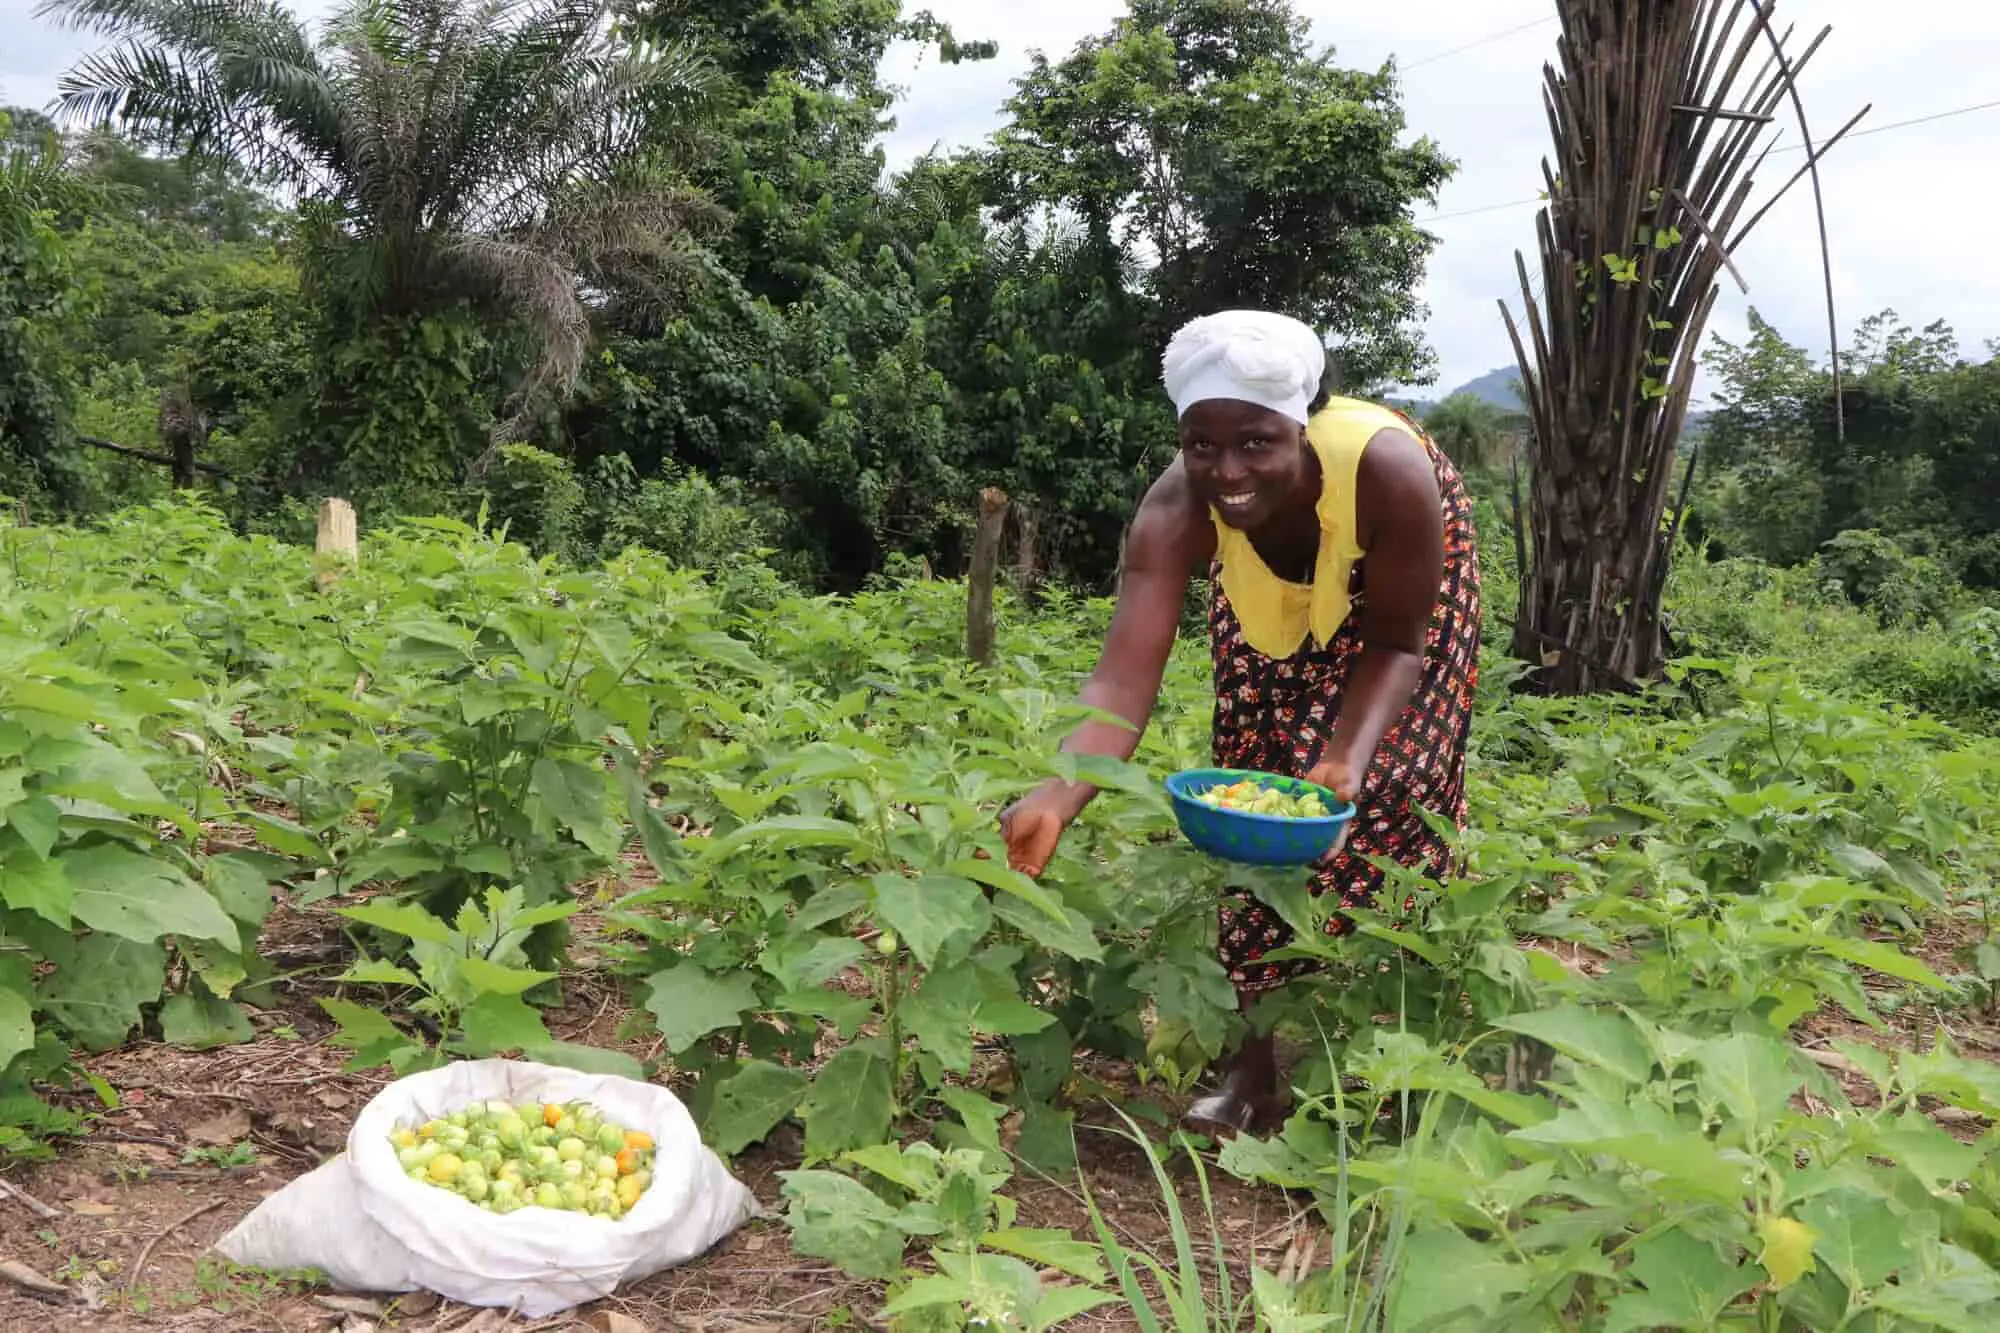 Woman in vegetable garden in Liberia